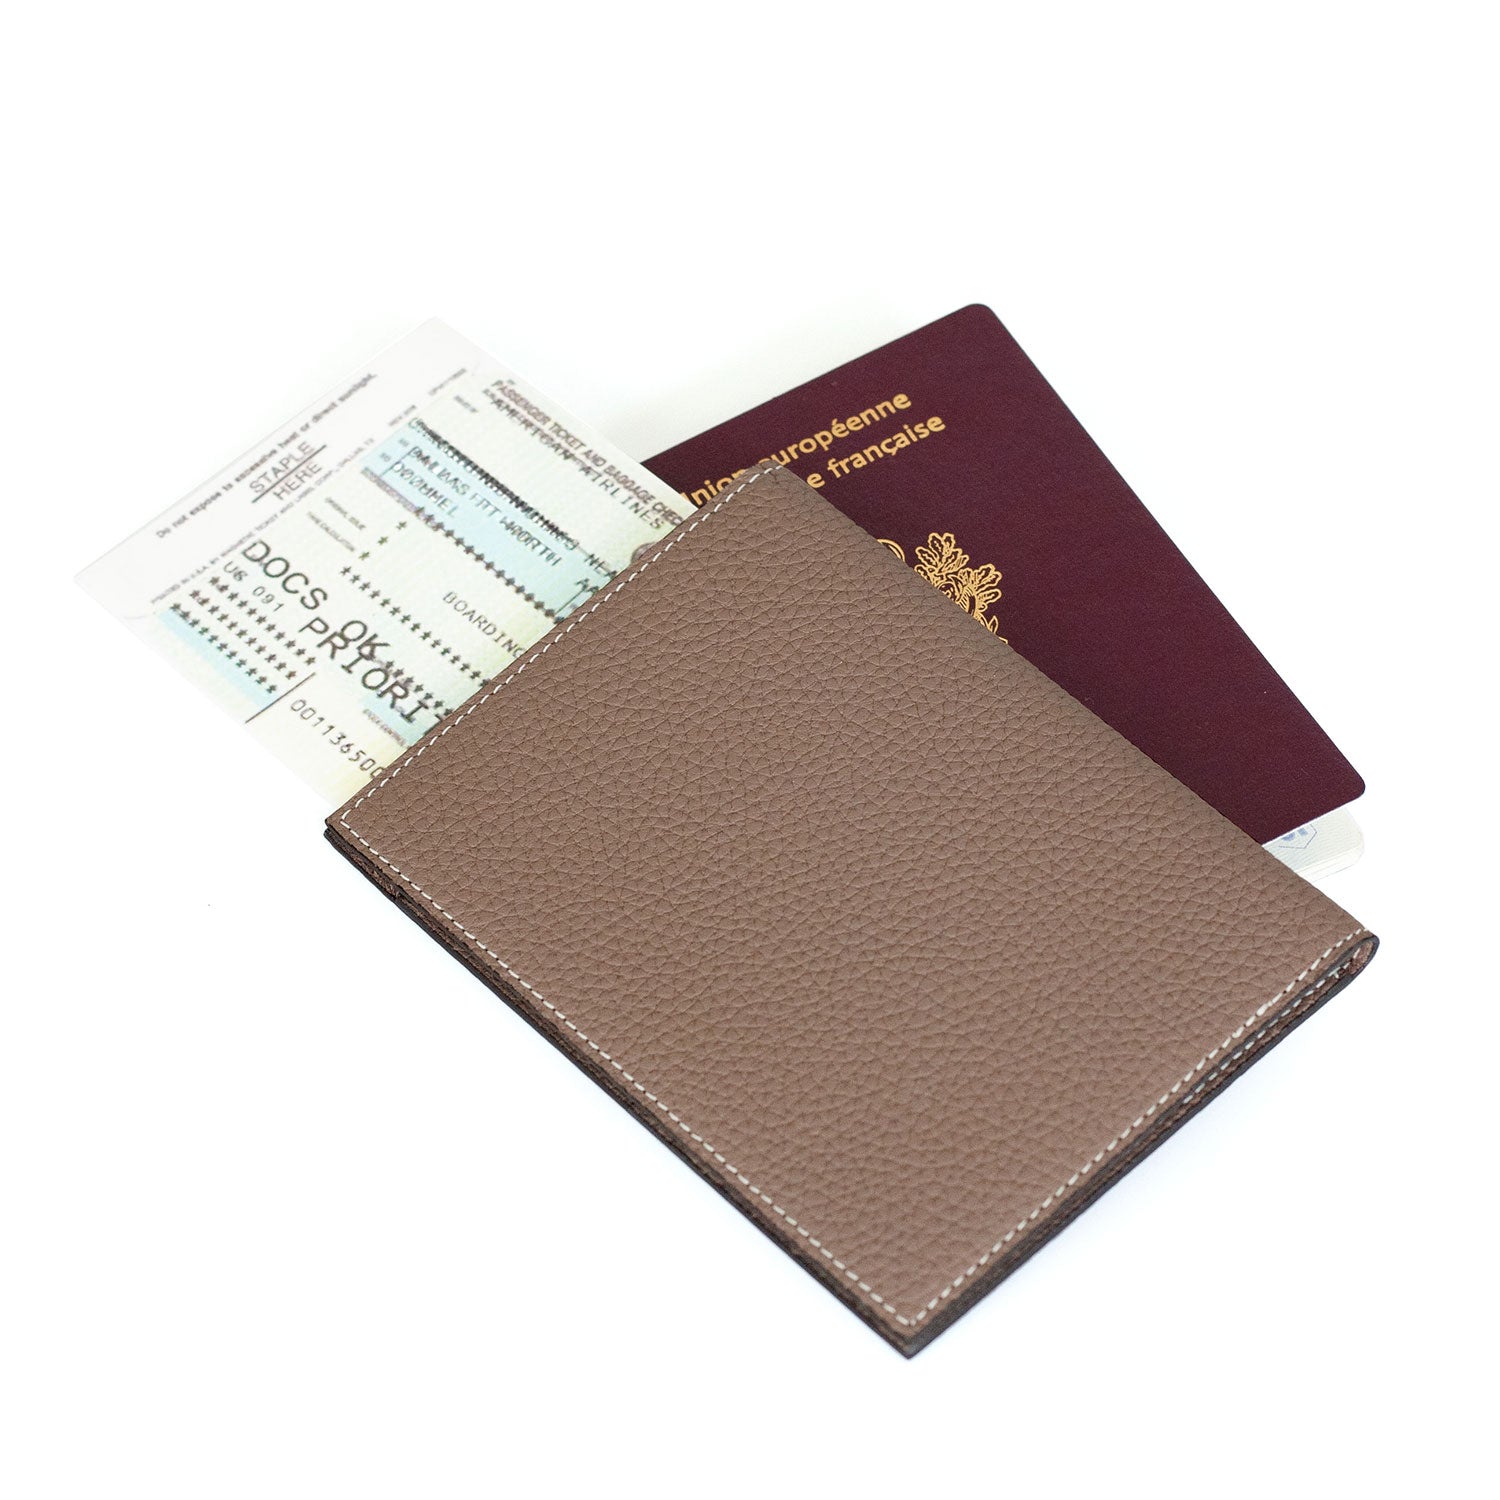 パスポートケース シュリンクレザー